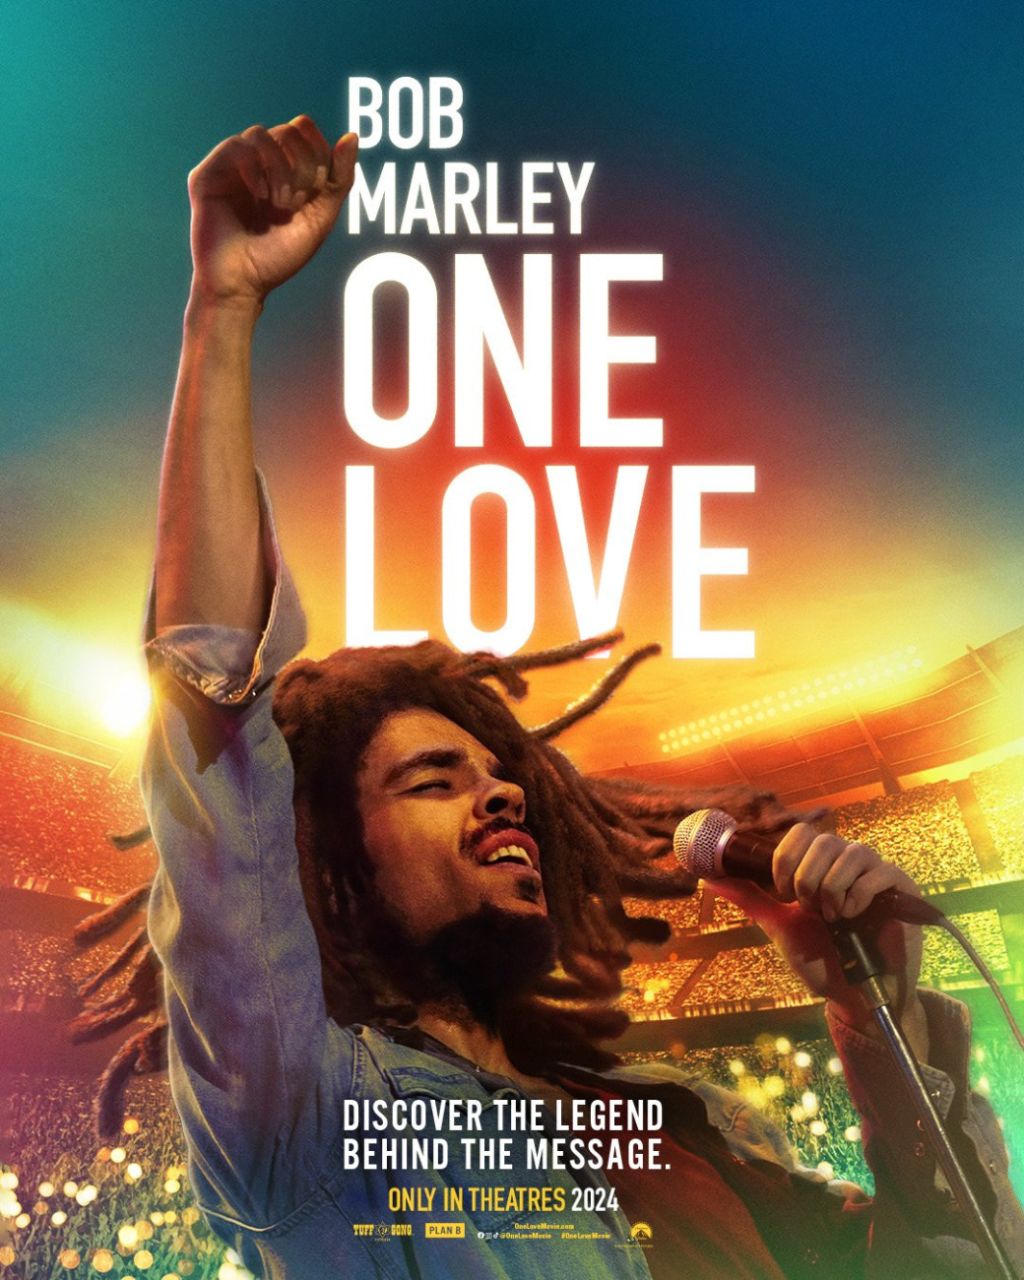 Obrázok podujatia Bob Marley